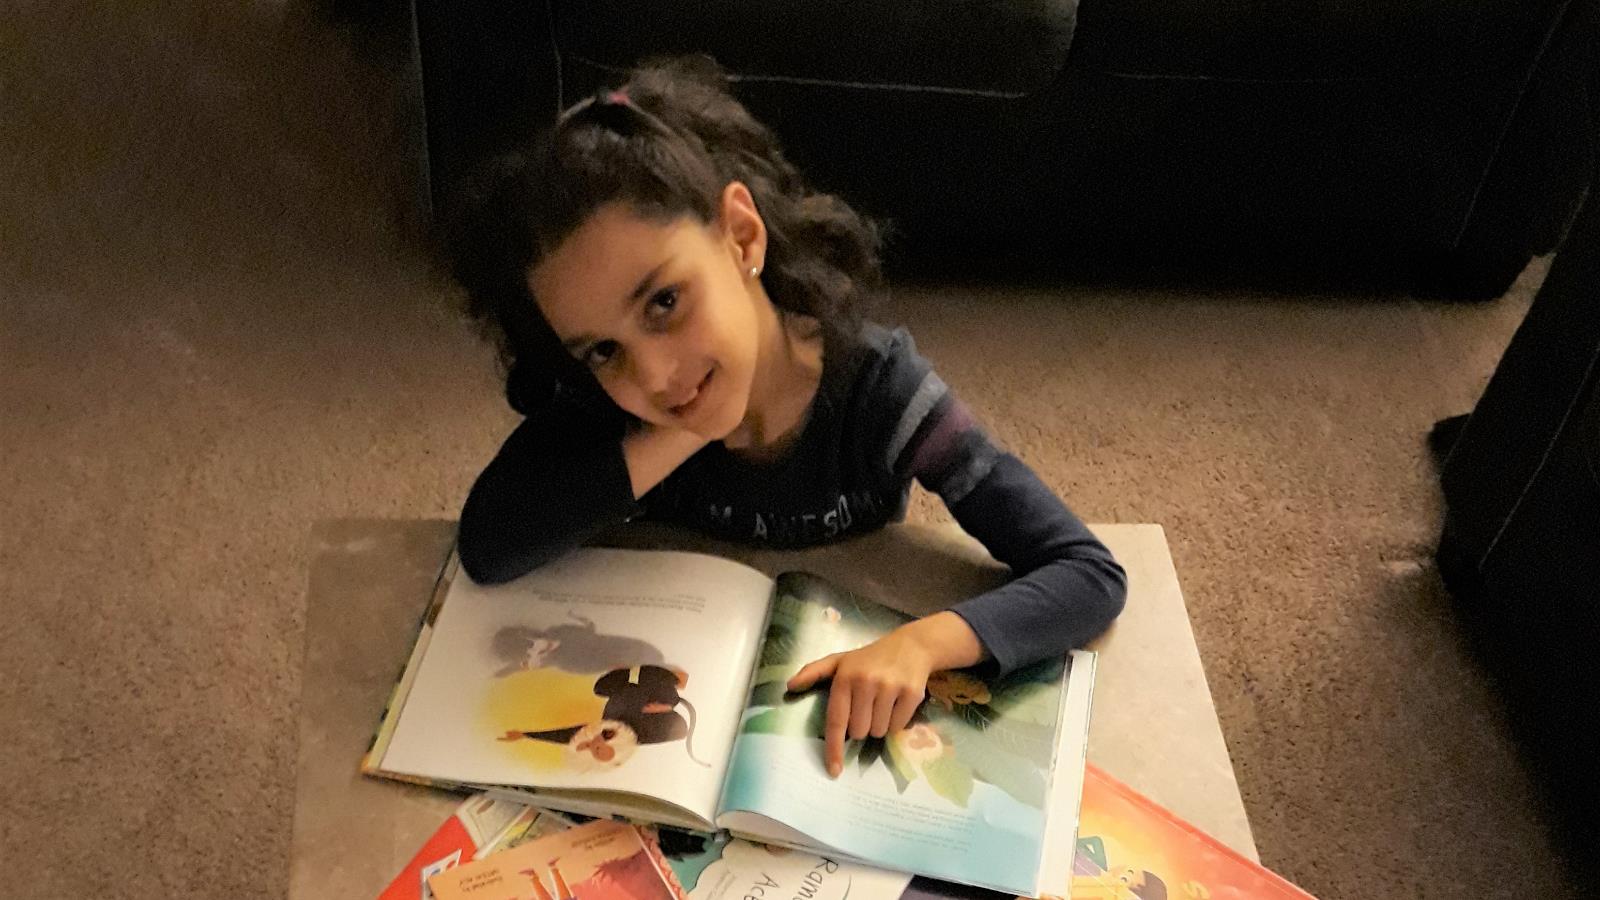 ‪ابنة شيرين مجر تفضل مجموعات بعينها دون أخرى بسبب المحتوى غير المباشر‬ (الجزيرة)